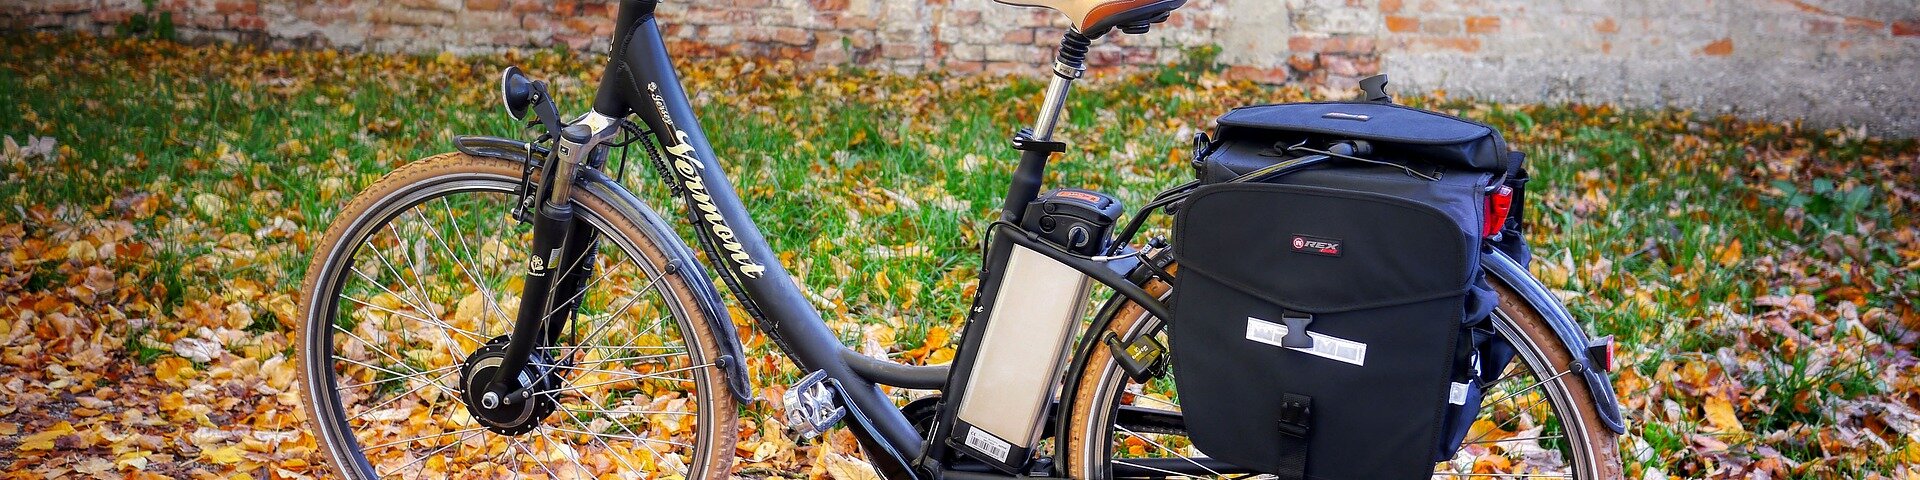 Mobilität der Zukunft - Auto, E-Bike - oder beides?